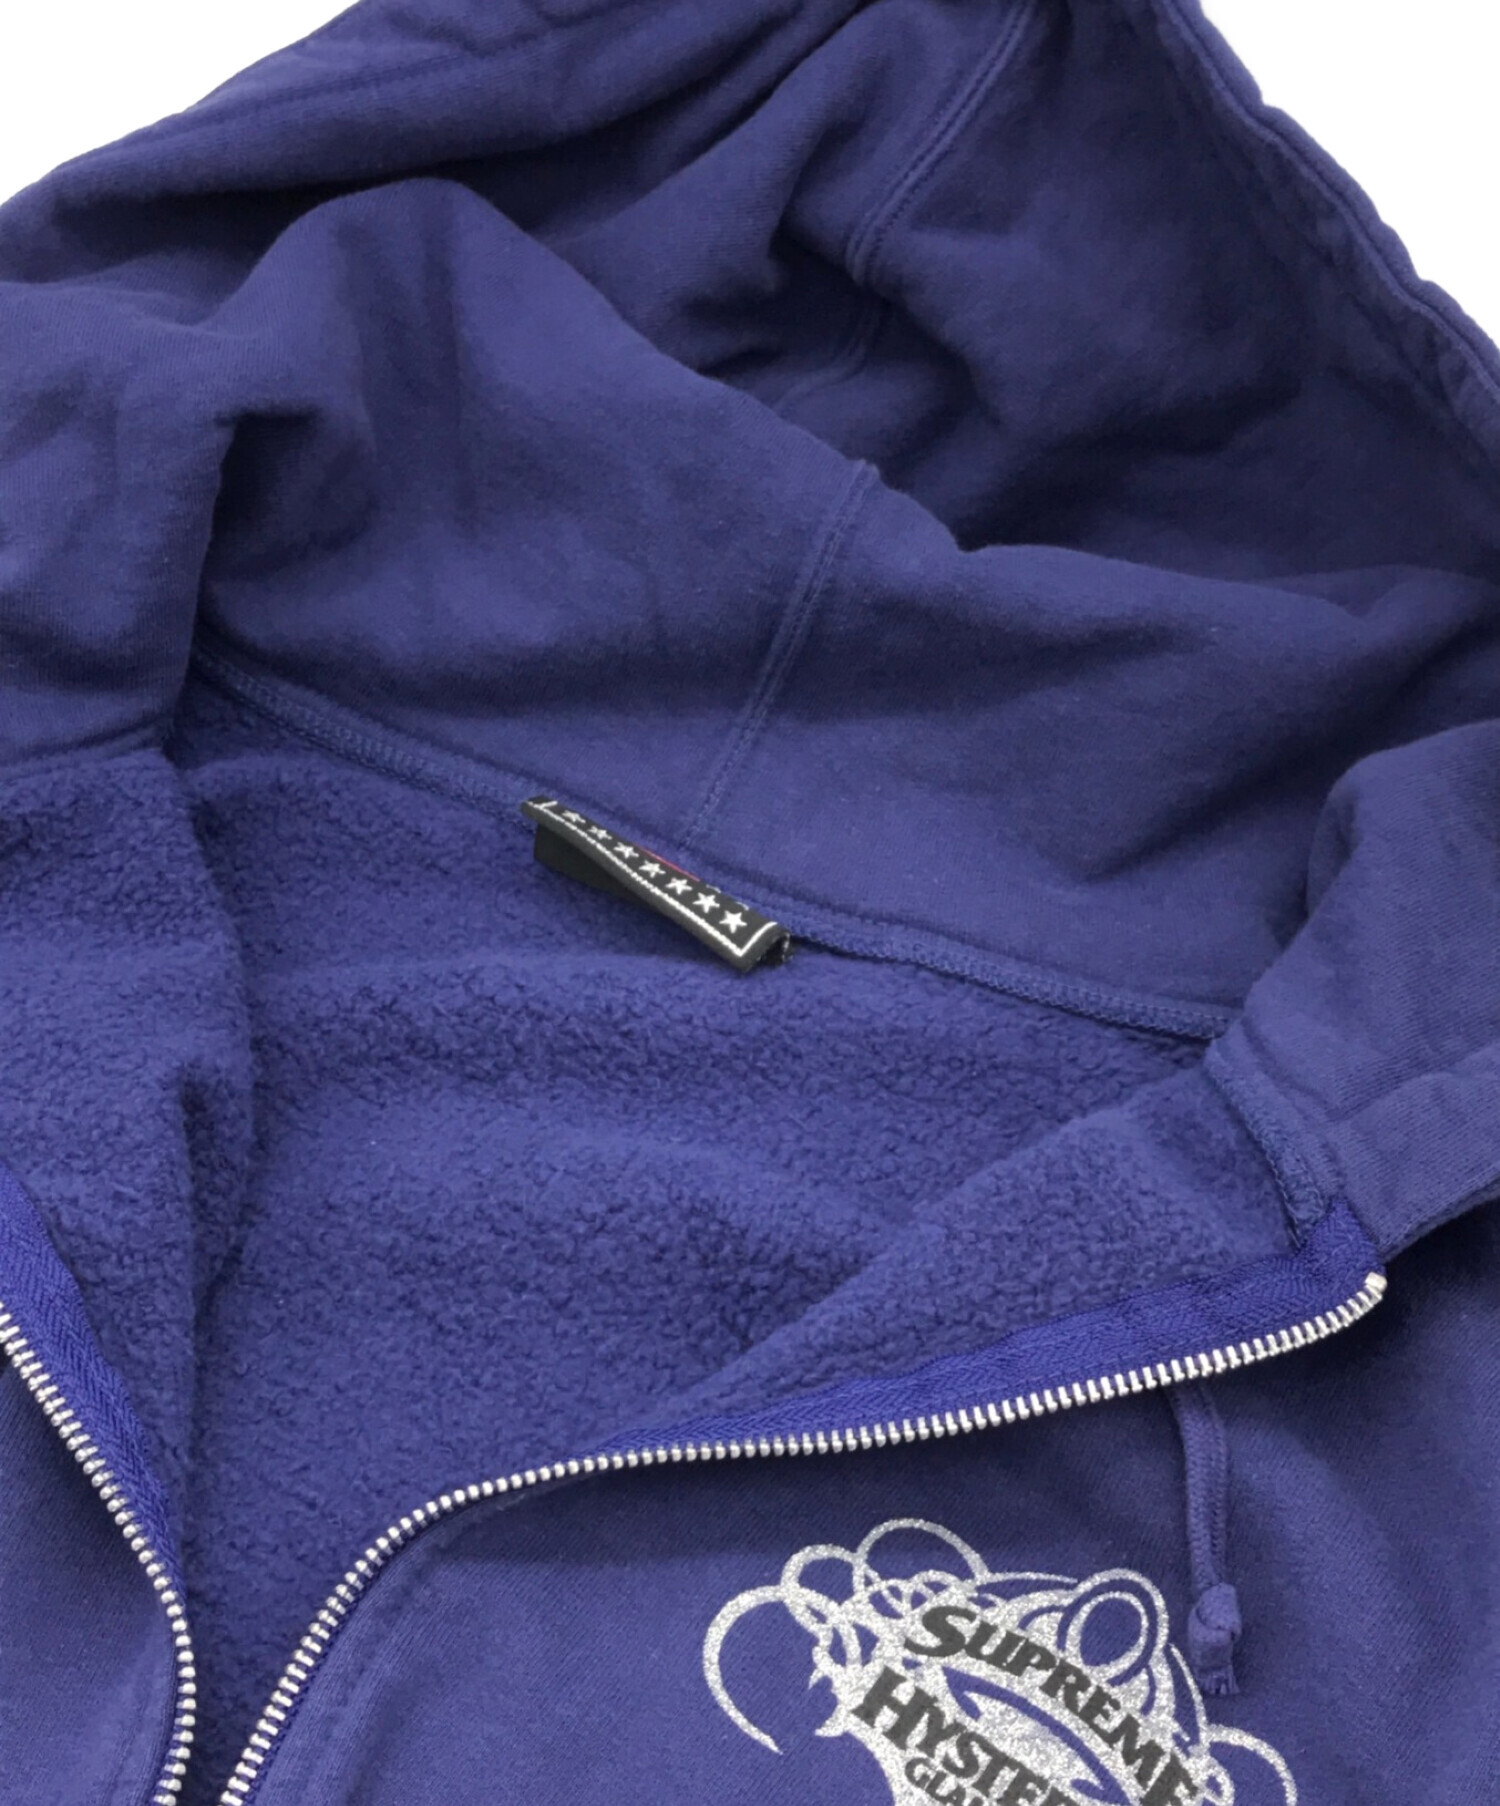 SUPREME (シュプリーム) Hysteric Glamour (ヒステリックグラマー) Zip Up Hooded Sweatshirt  ネイビー サイズ:XL